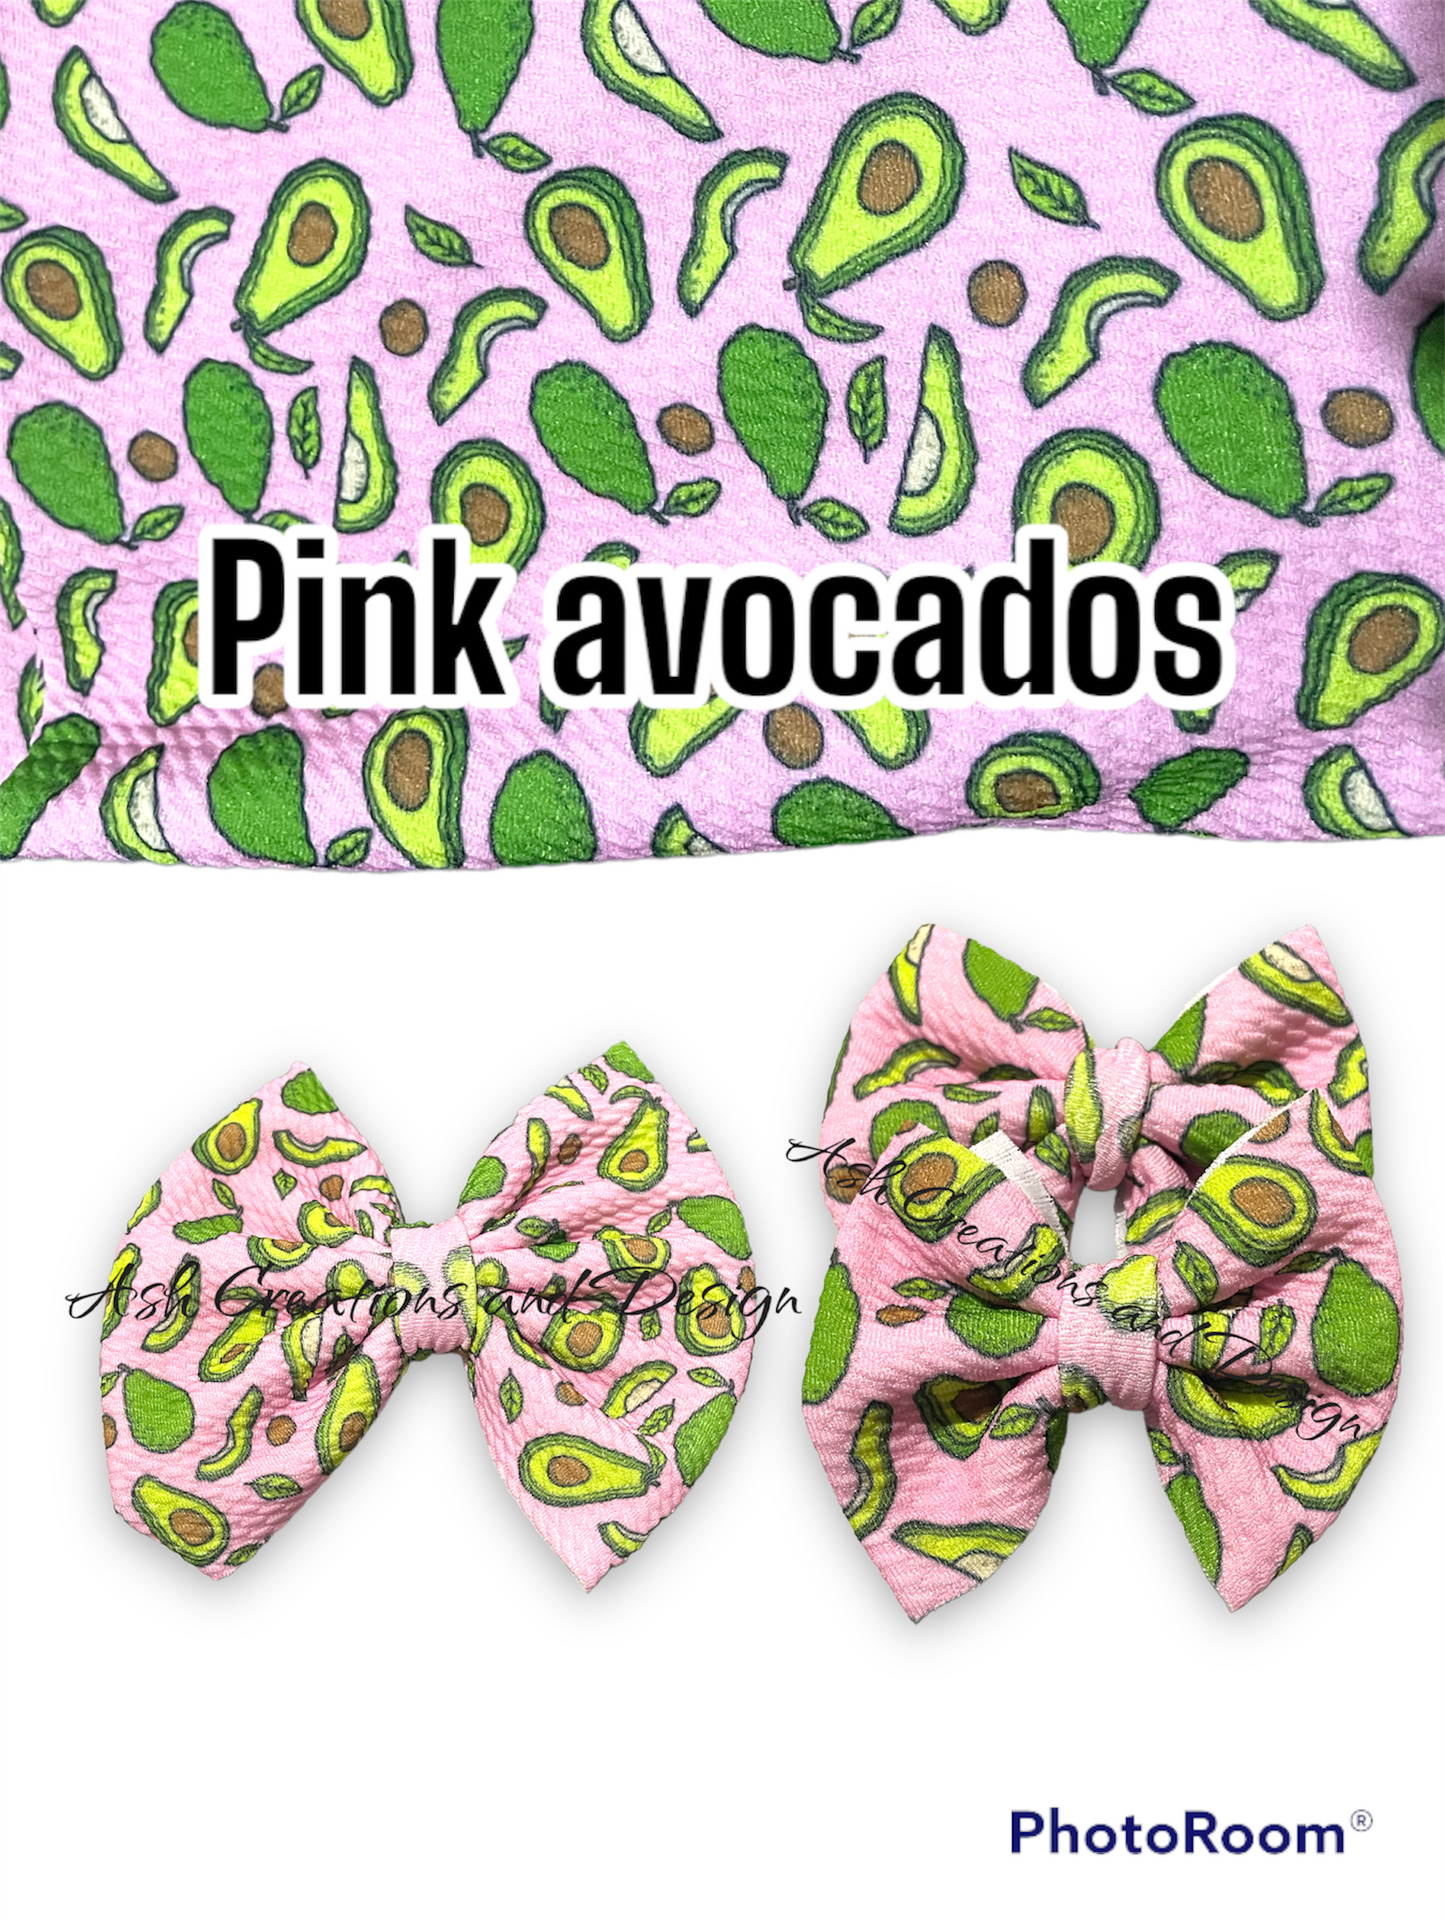 Pink avocados